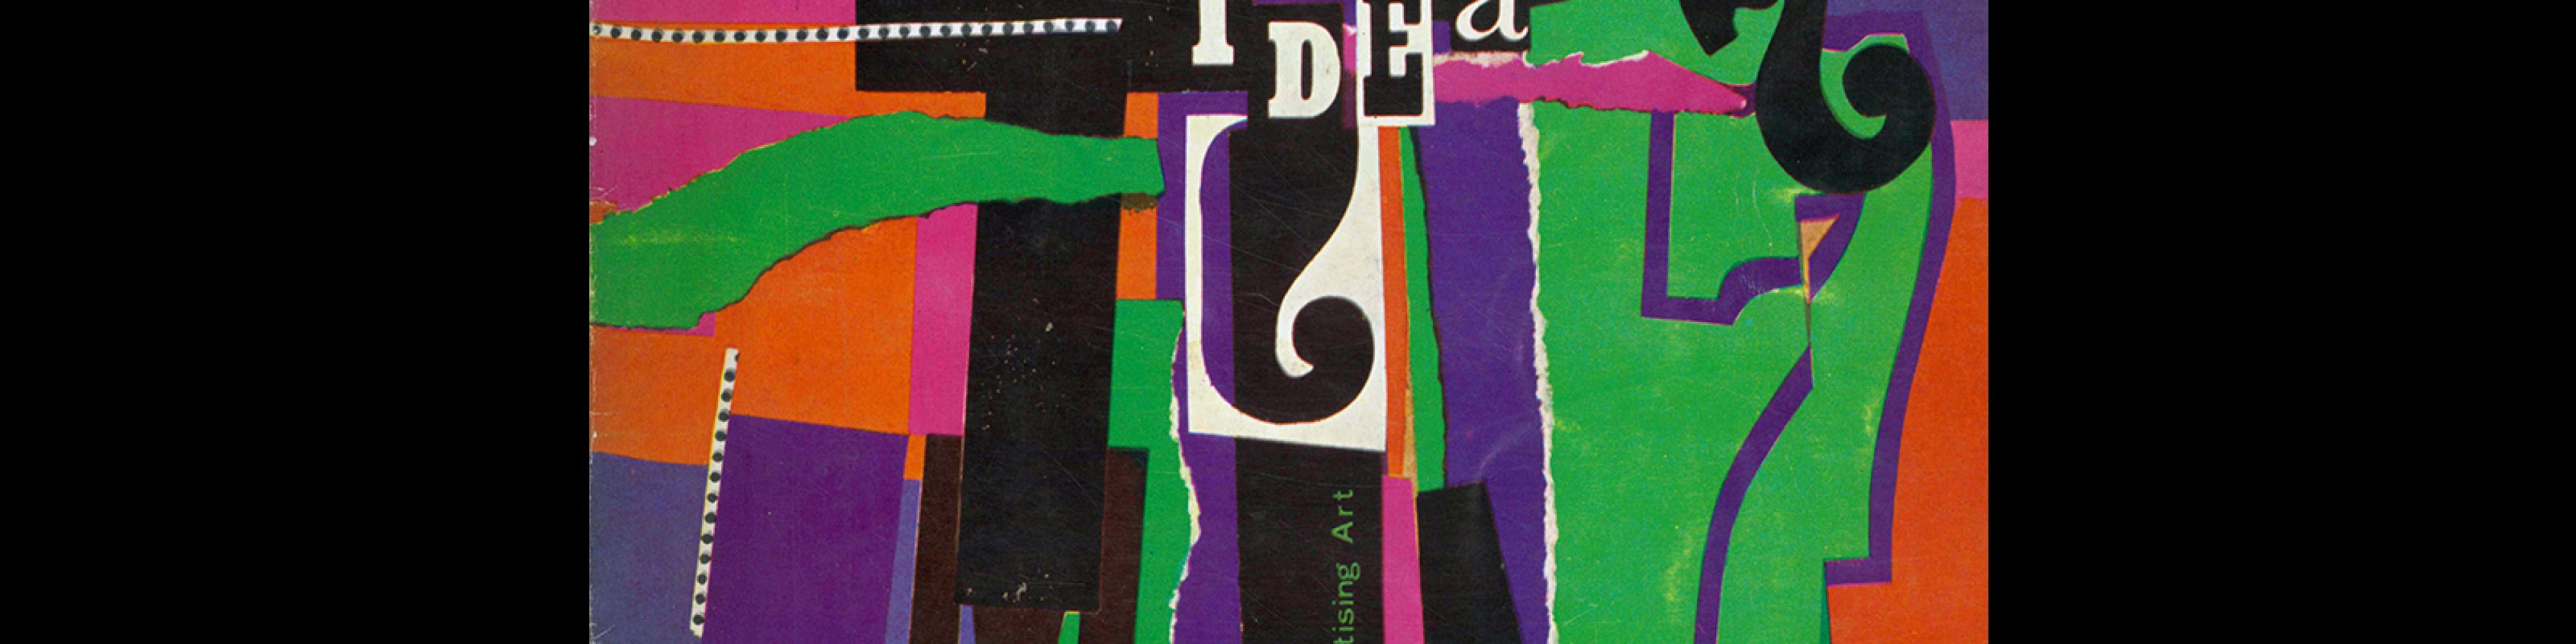 Idea 54, 1962-8. Cover design by Fletcher Roger Sliker.